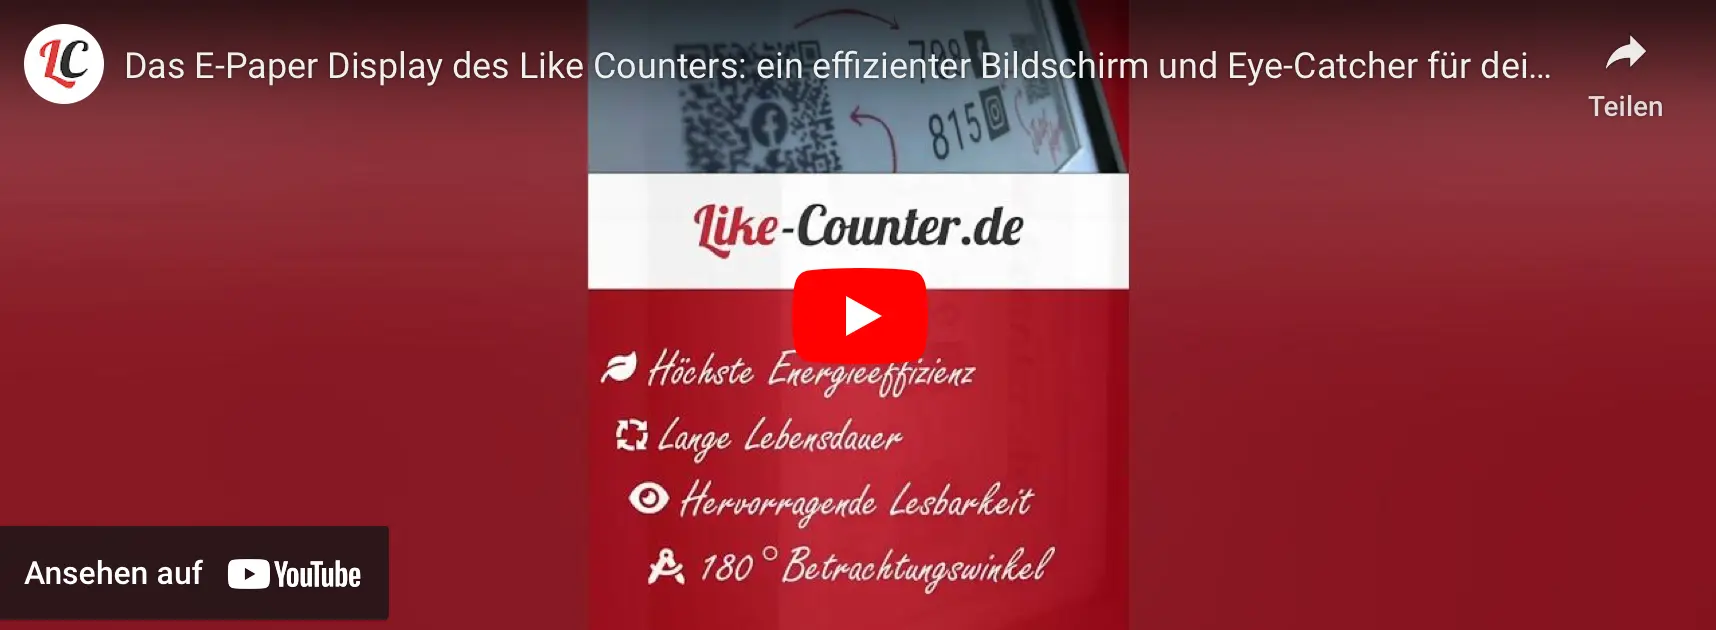 Das E-Paper Display des Like Counters: ein effizienter Bildschirm und Eye-Catcher für deine Besucher - https://youtube.com/embed/tvhD44AFFoY